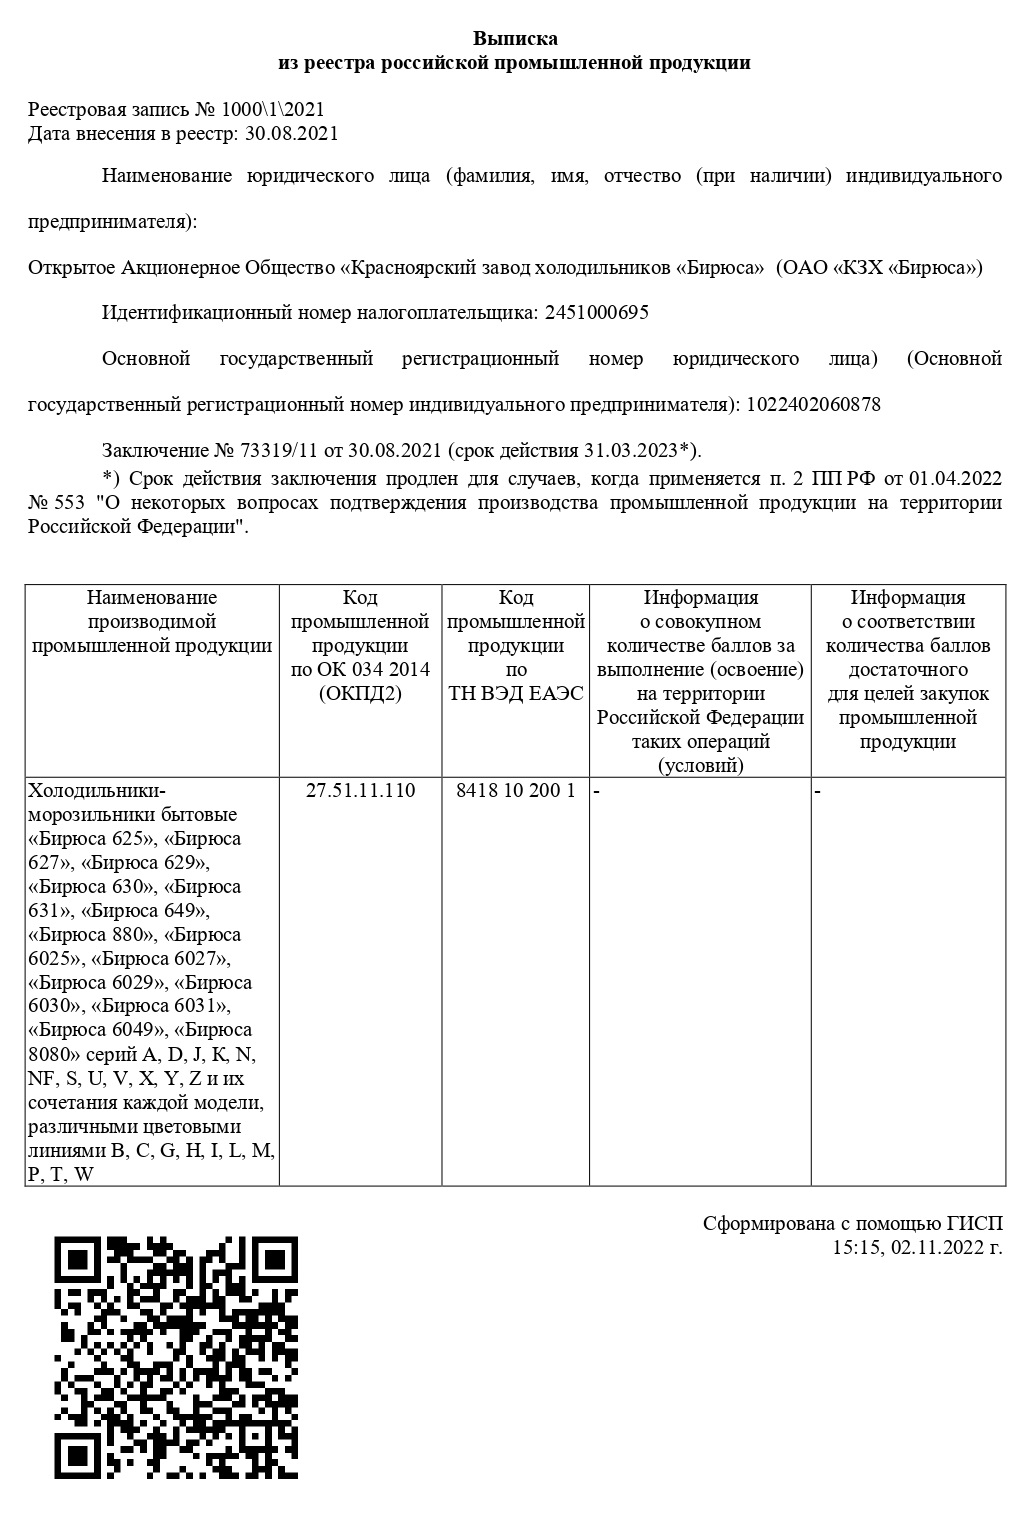 Пример выписки из реестра российской продукции